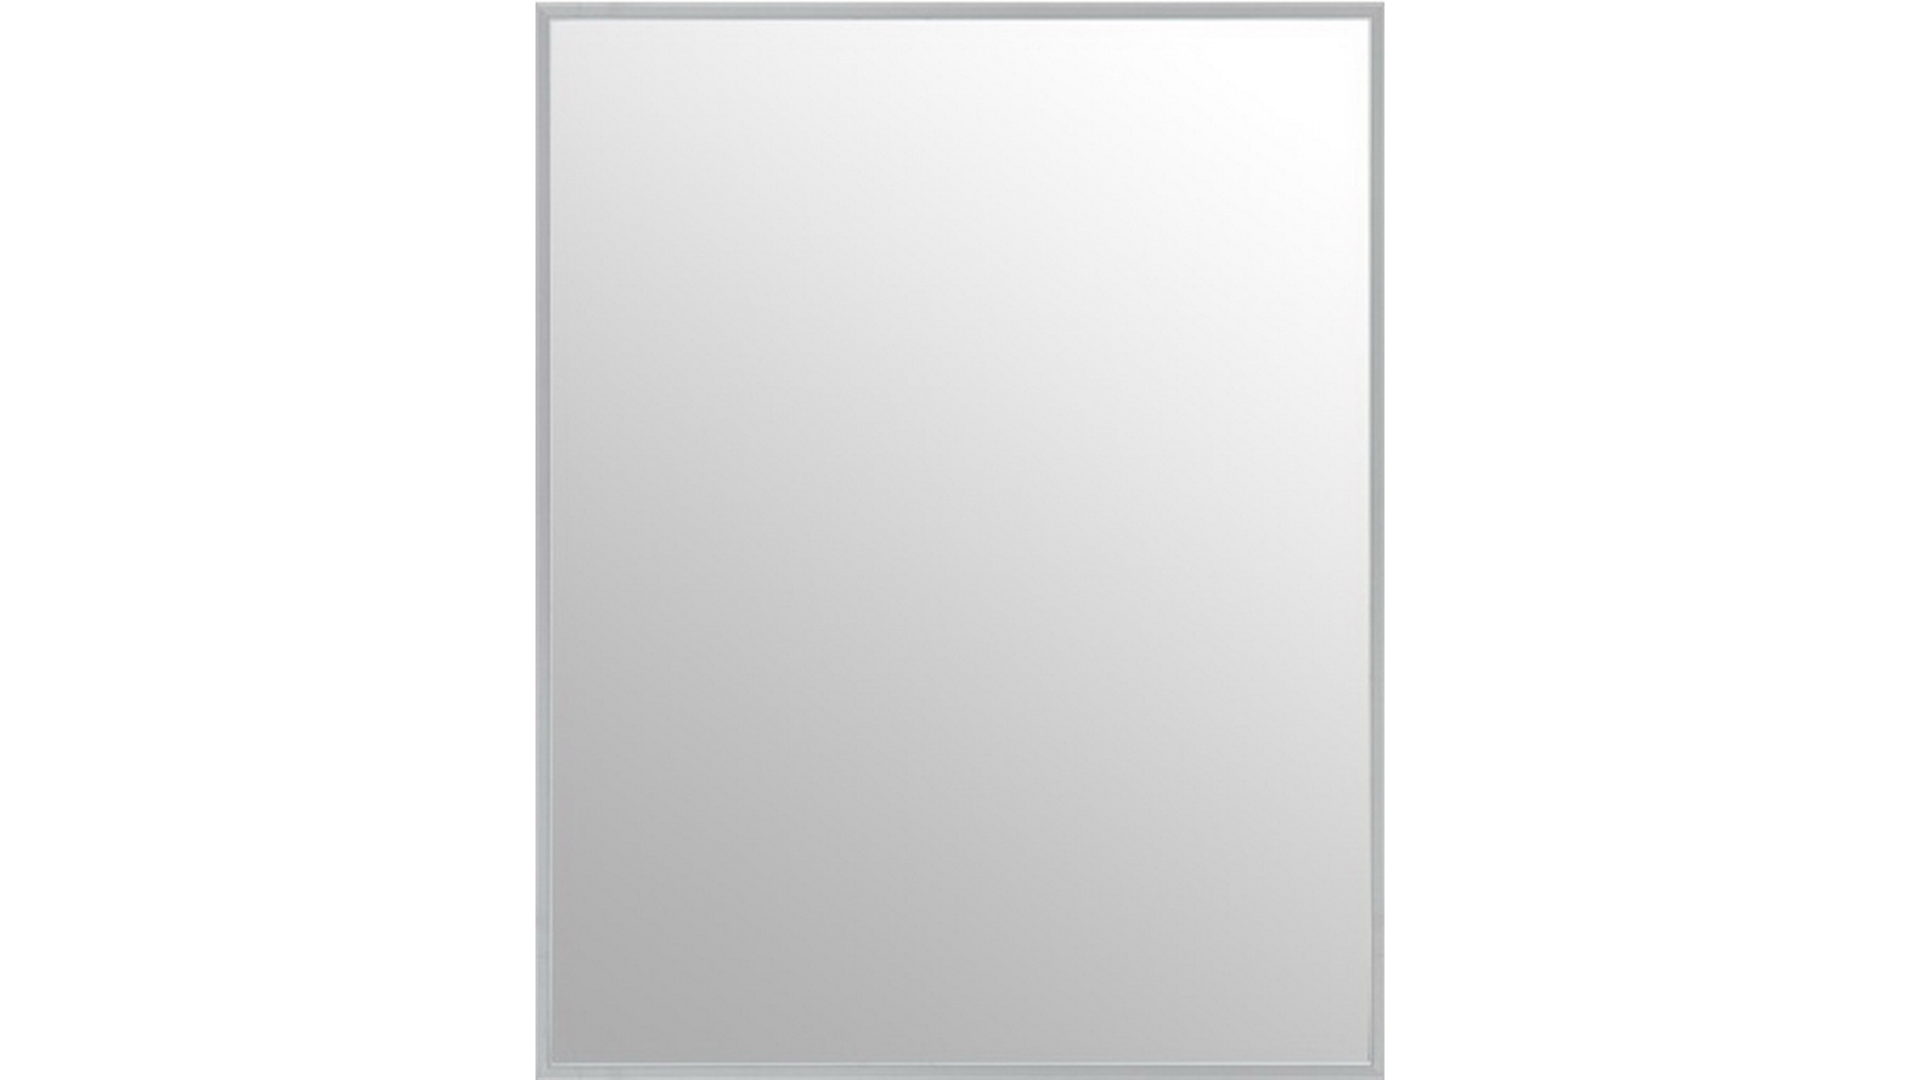 Wandspiegel Len-fra aus MDF Spiegel Kunststoff in Silber LEN-FRA Wandspiegel Garderobenspiegel 70-10 LARA 03 silberfarbener Rahmen - 50 x 70 cm